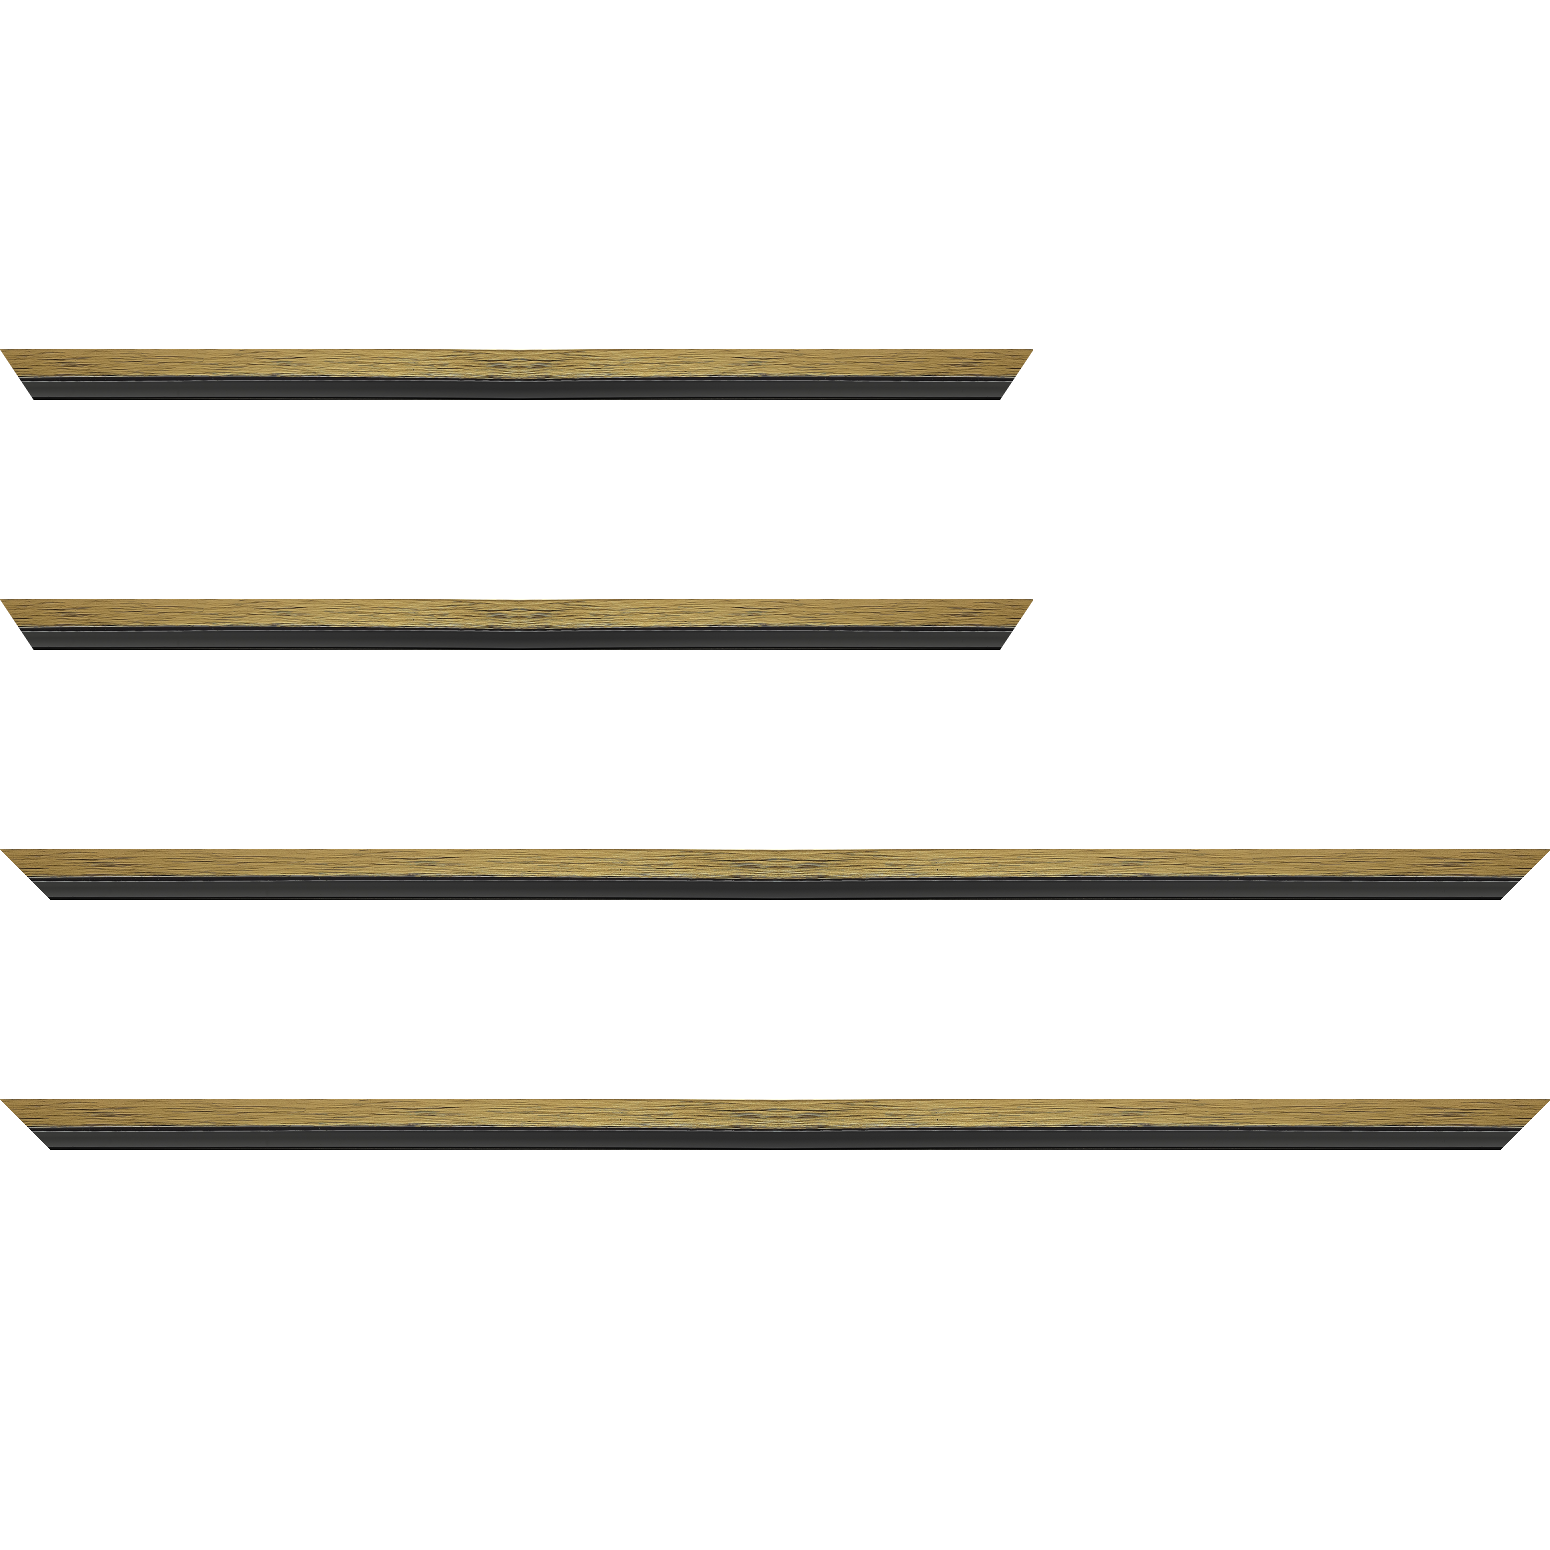 Baguette bois profil plat largeur 1.6cm couleur or contemporain filet noir en retrait de la face du cadre de 6mm assurant un effet très original - 40x60